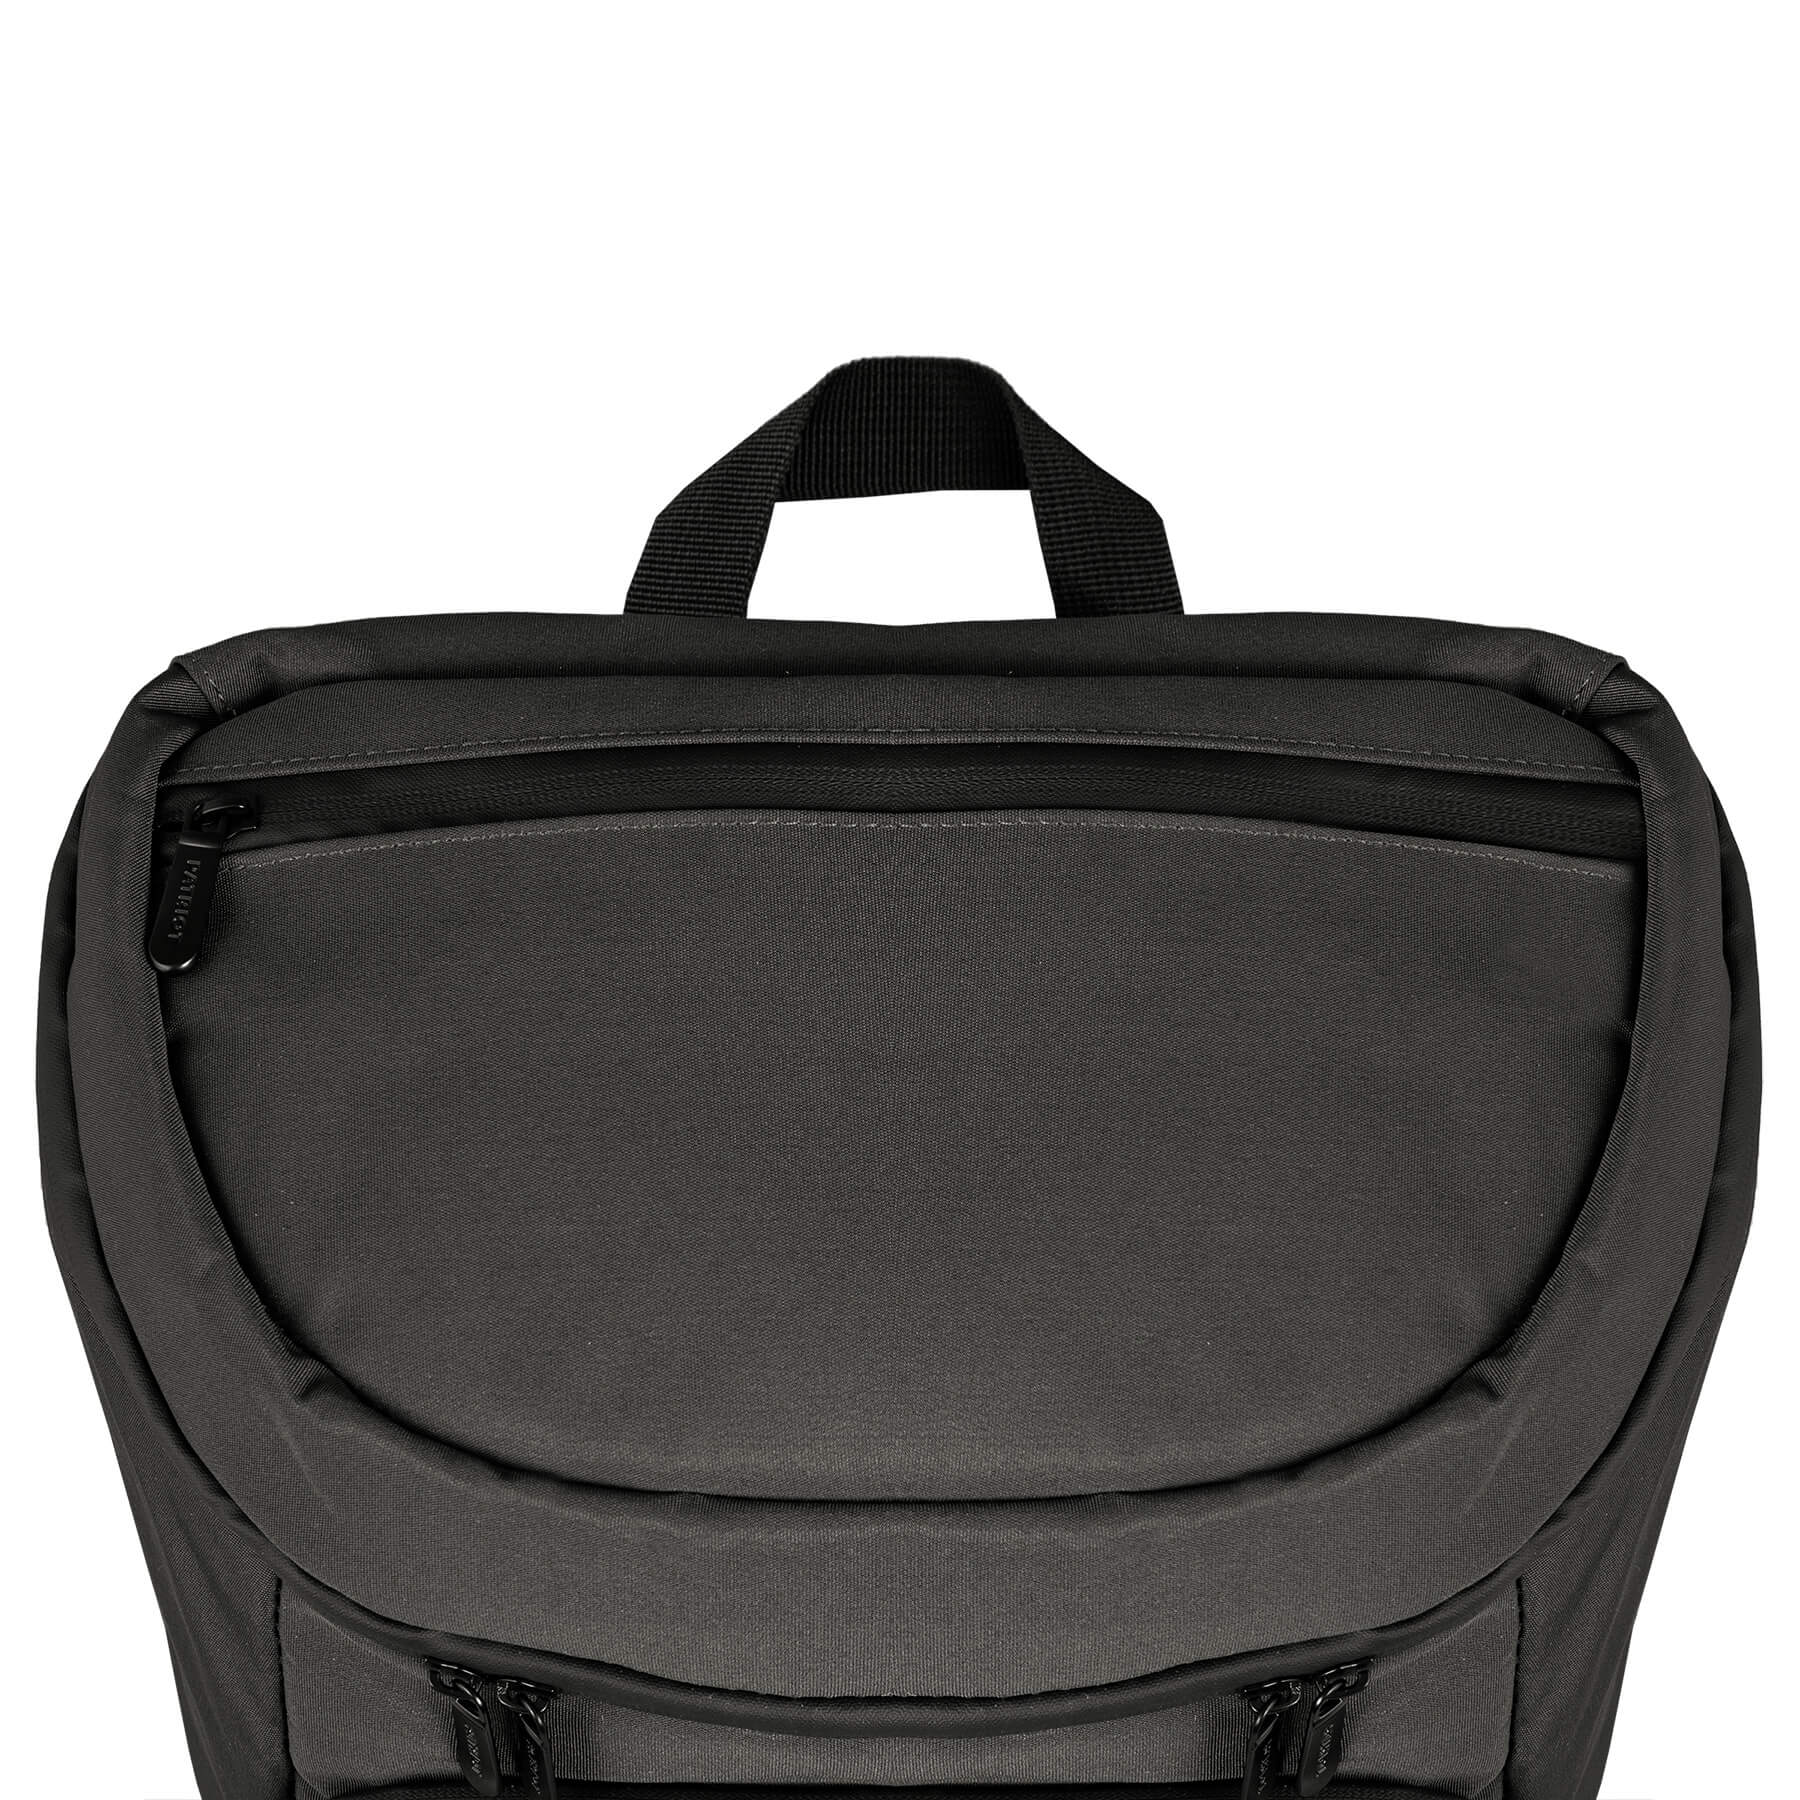 Logan RPET 18-Can Backpack Cooler - GR4513